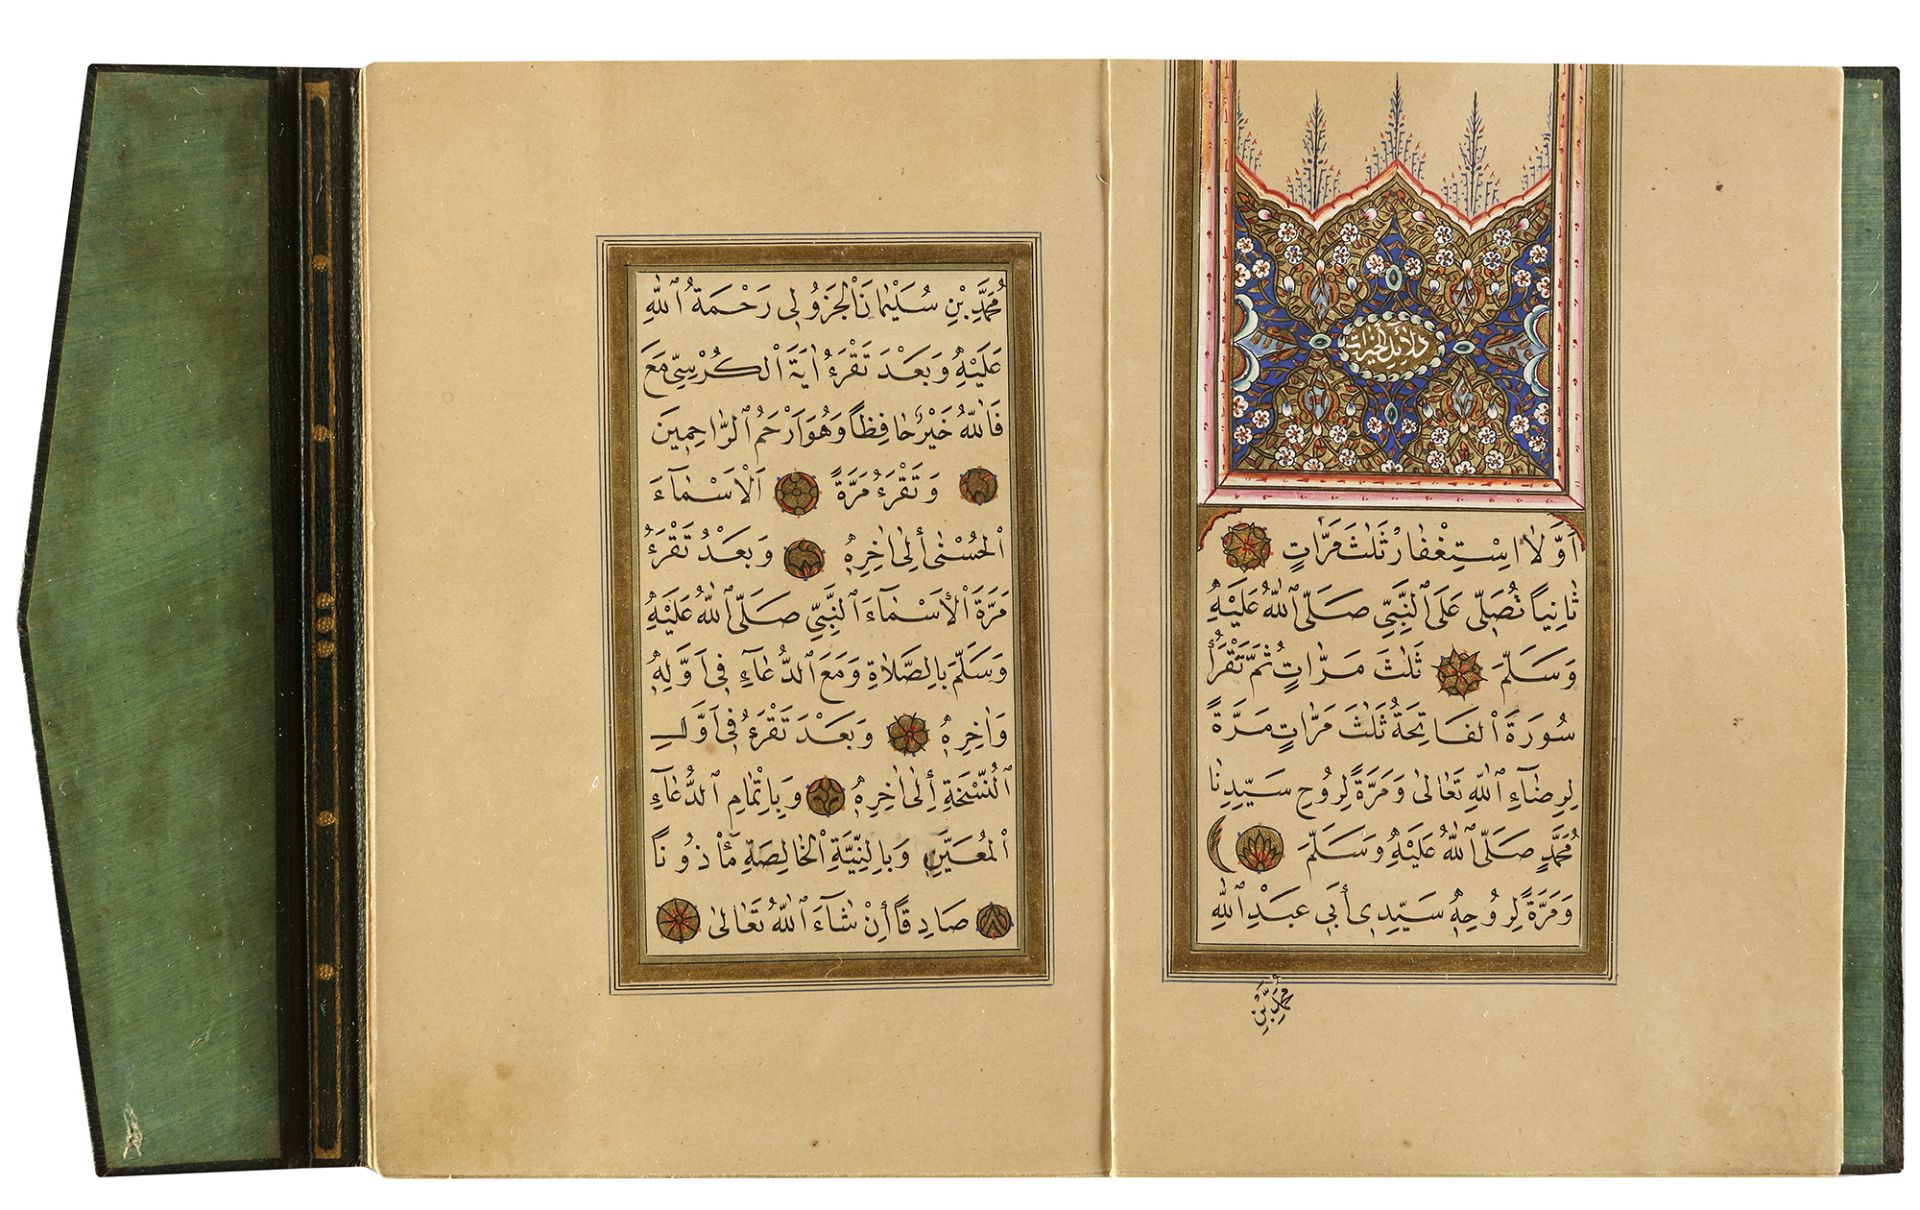 DALA’IL AL-KHAYRAT BY OSMAN HILMI STUDENT OF MUHAMMED ANWAR EFENDI, TURKEY, 1295 AH/1878 AD - Image 6 of 9